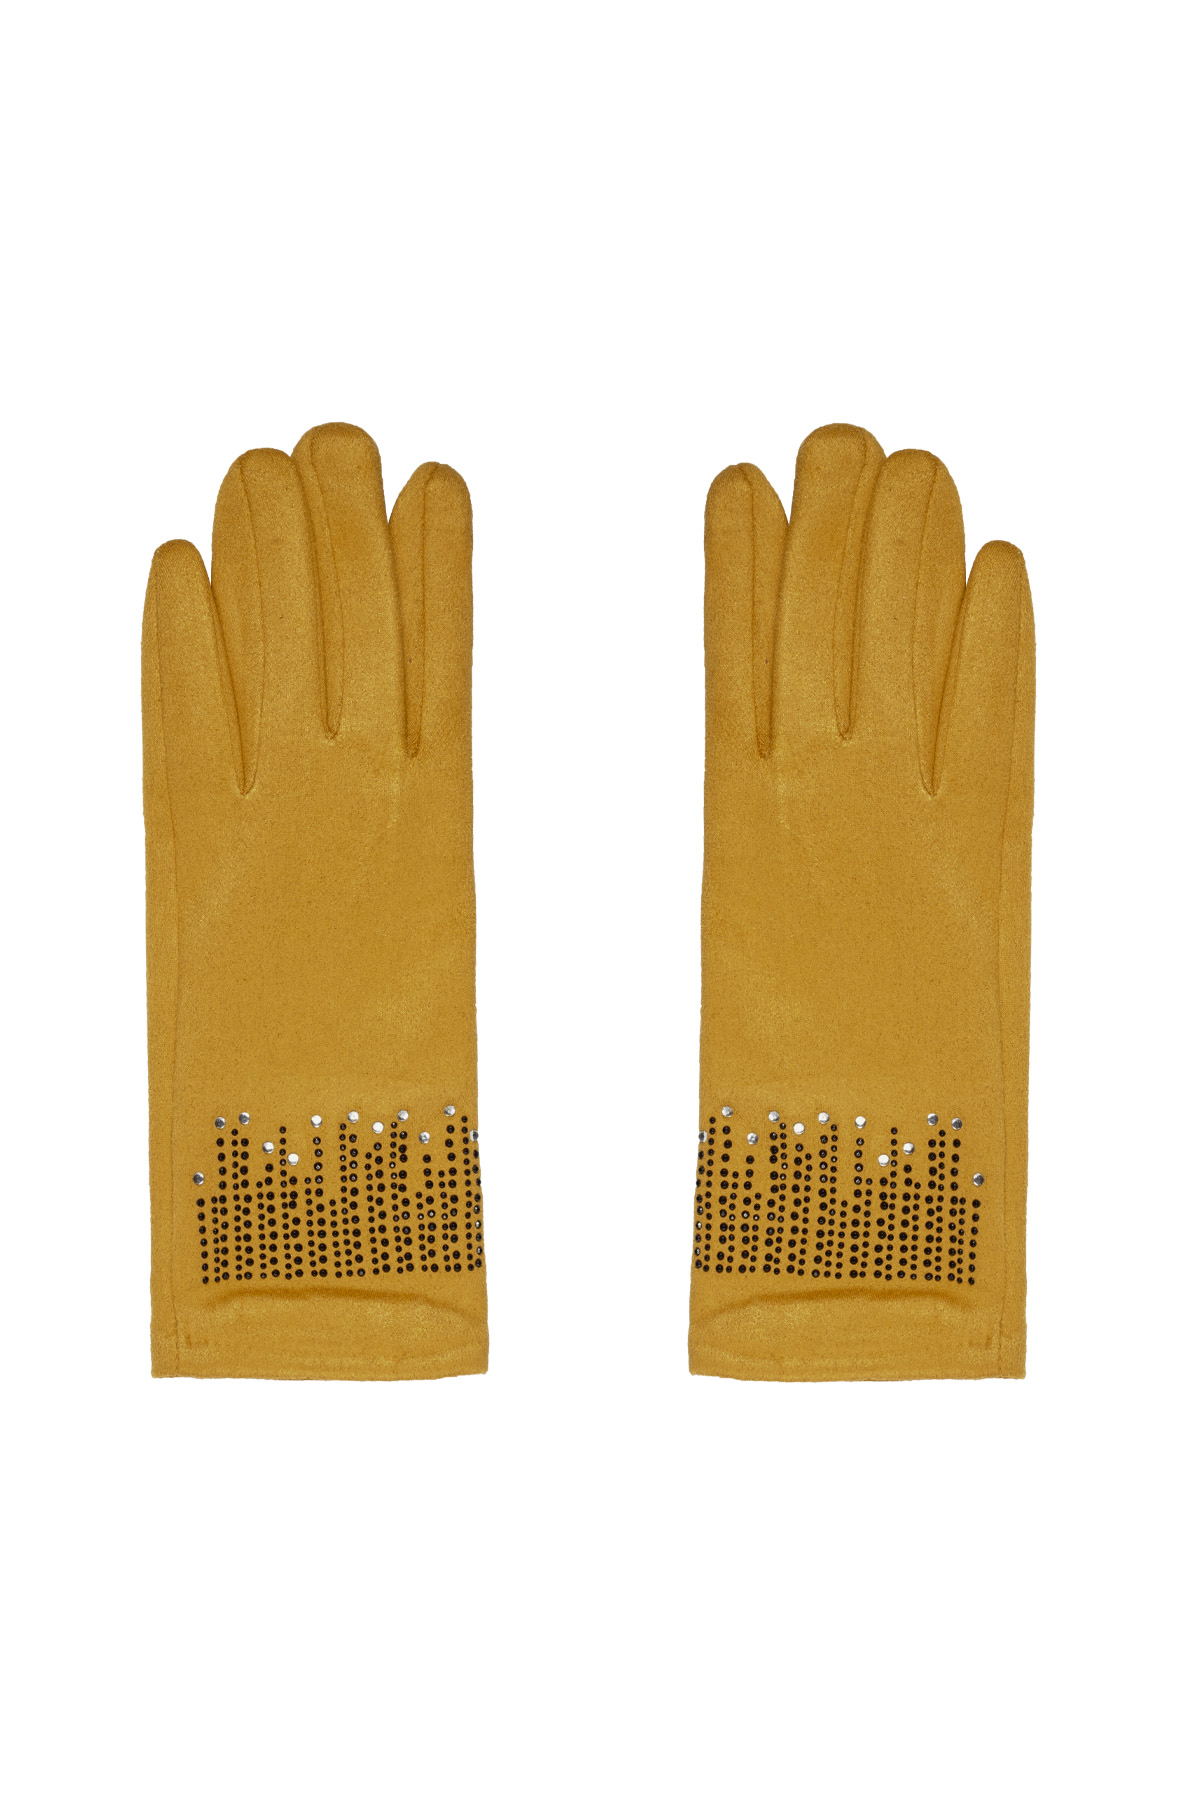 Handschuhe Steine - gelb 